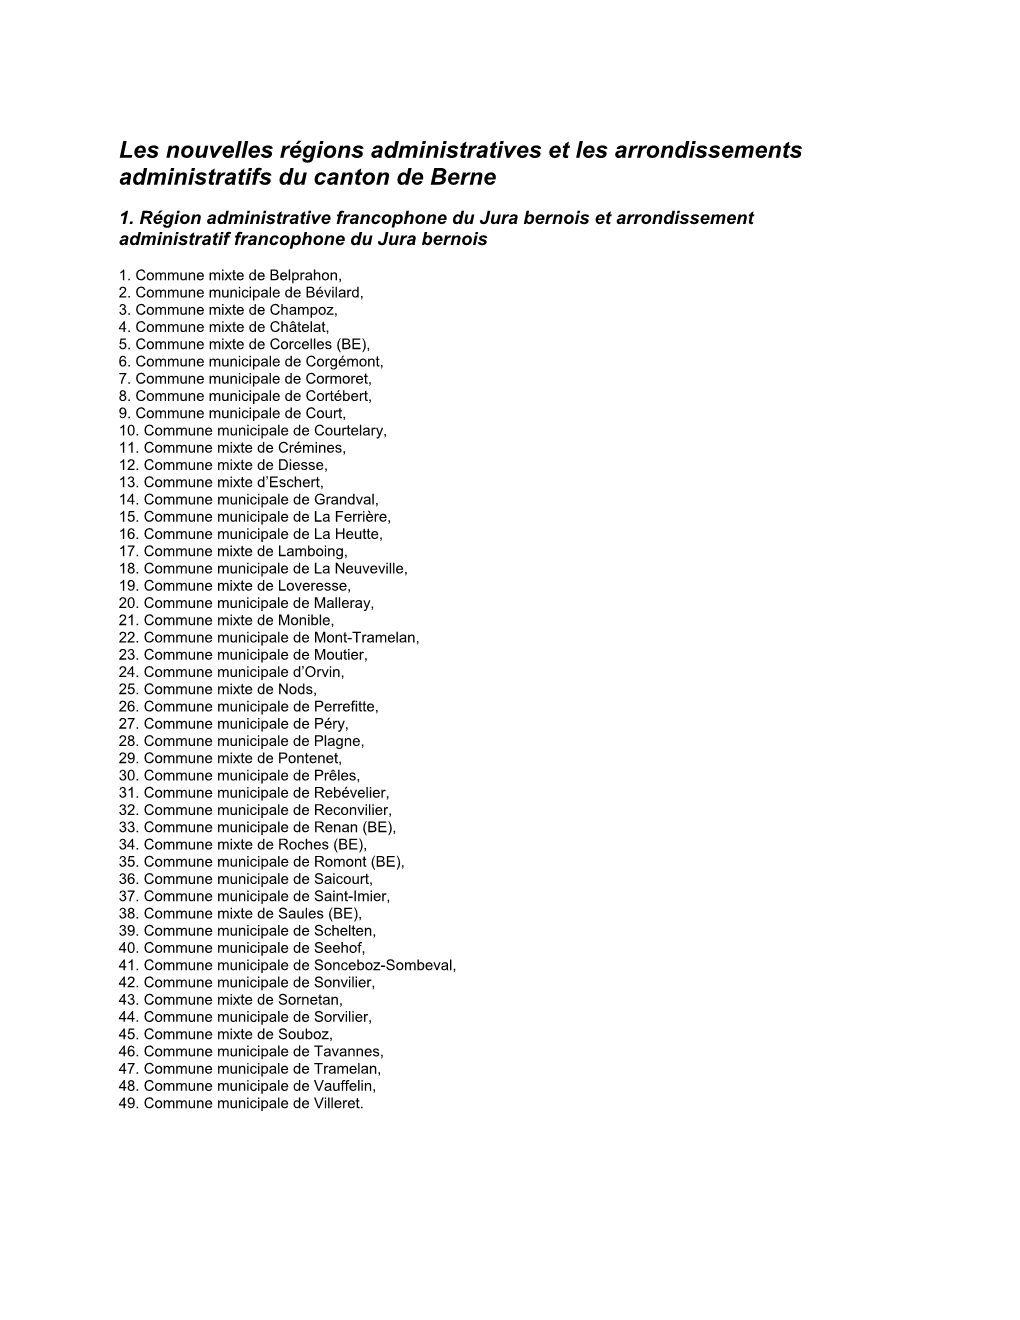 Les Nouvelles Régions Administratives Et Les Arrondissements Administratifs Du Canton De Berne